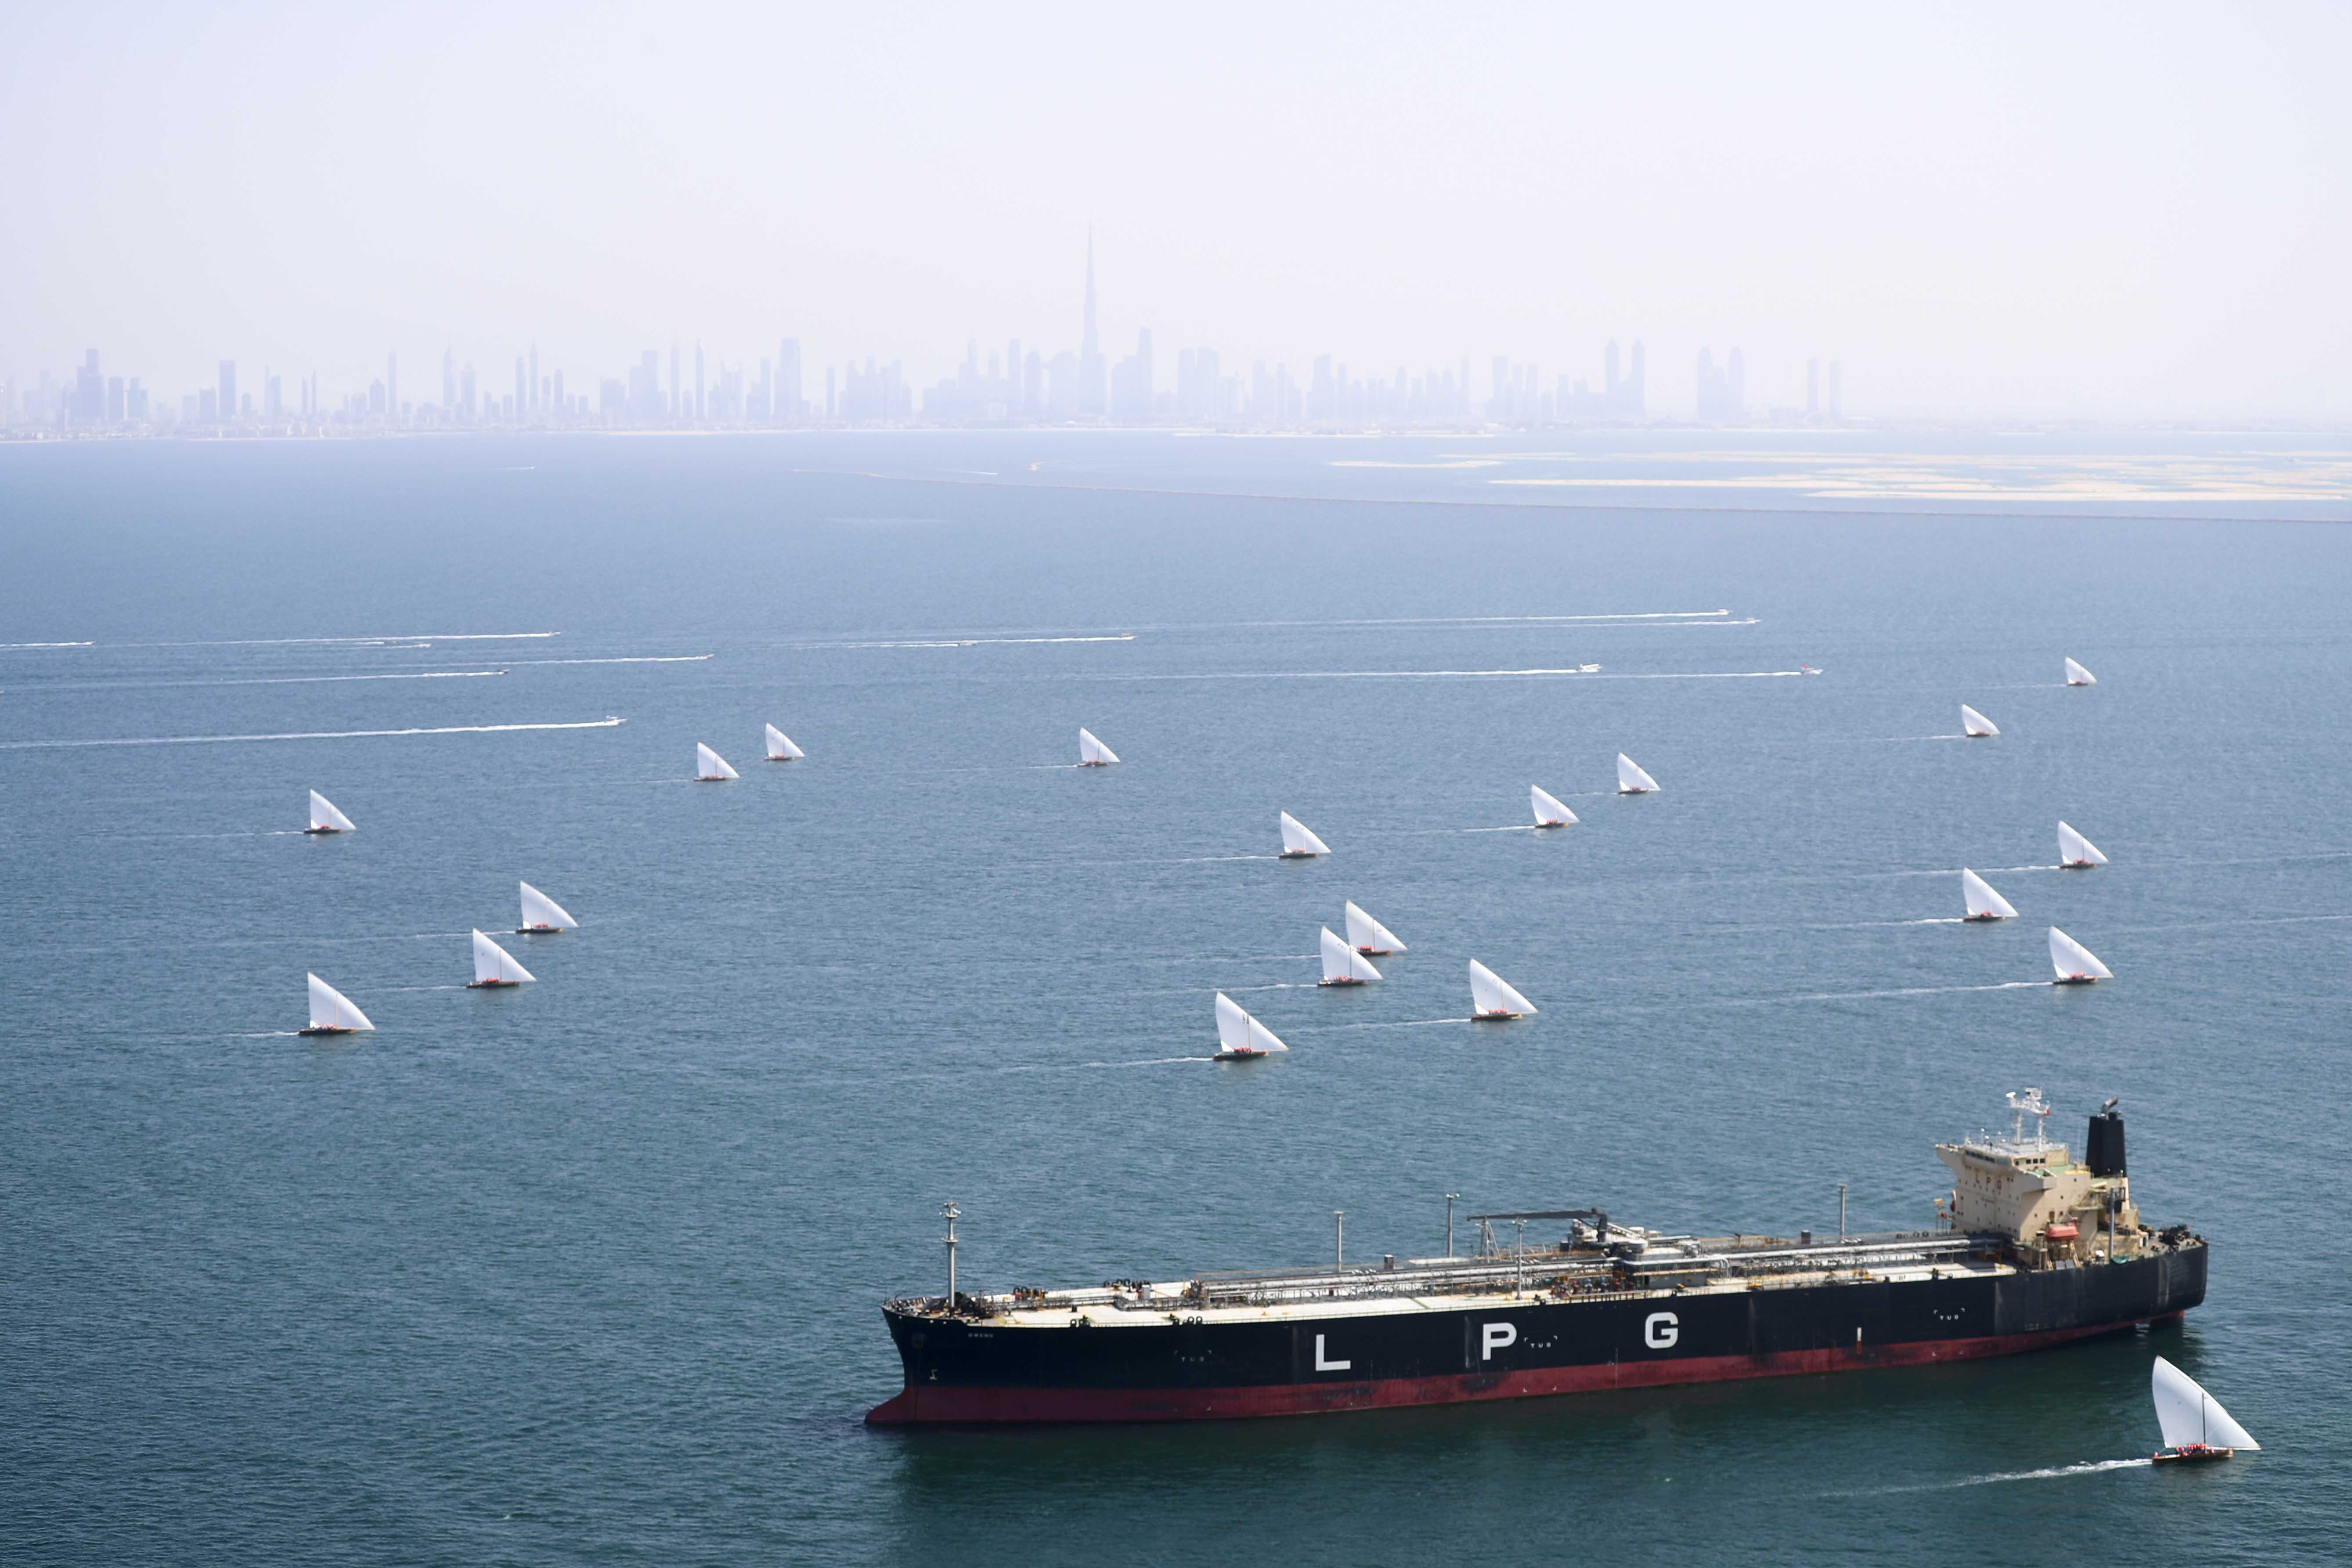 سباق القوارب الشراعية 43 قدما يزين شواطئ دبي السبت